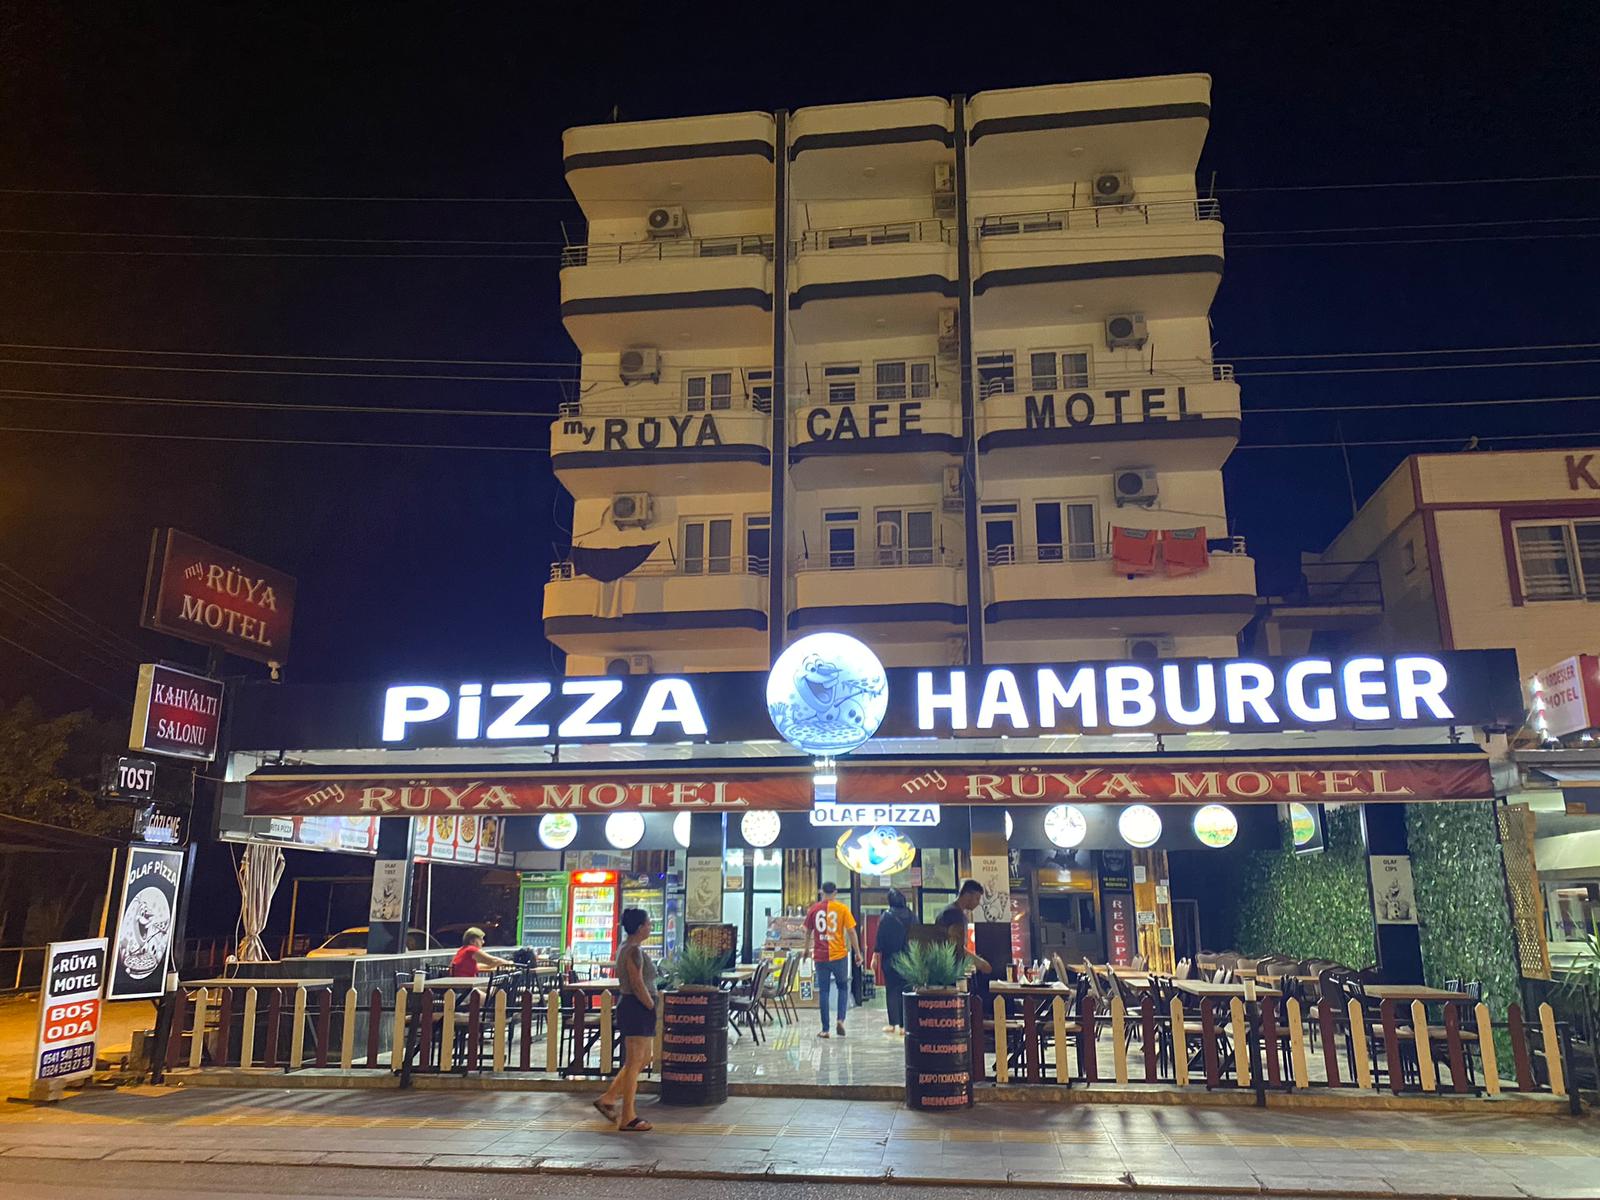 MY RÜYA MOTEL Kızkalesi Uygun Otel Cafe Pizza Hamburger Salonu